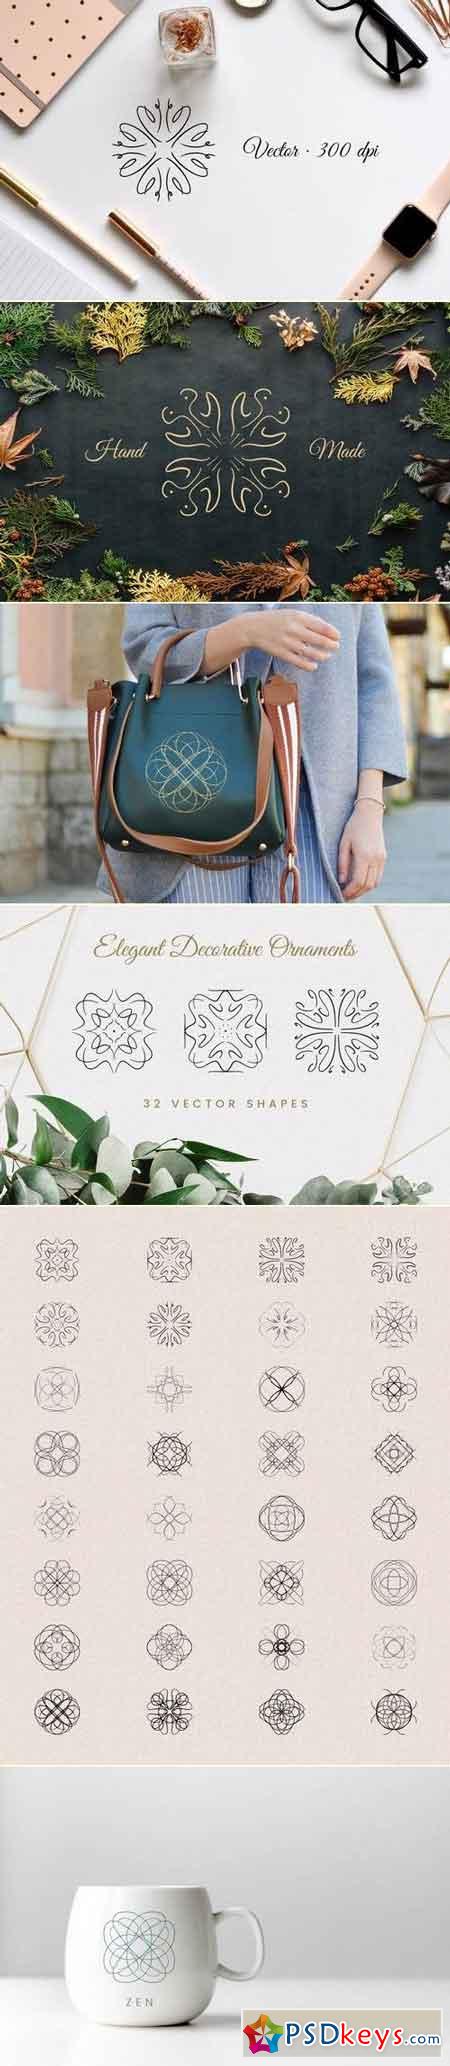 Elegant Decorative Ornaments